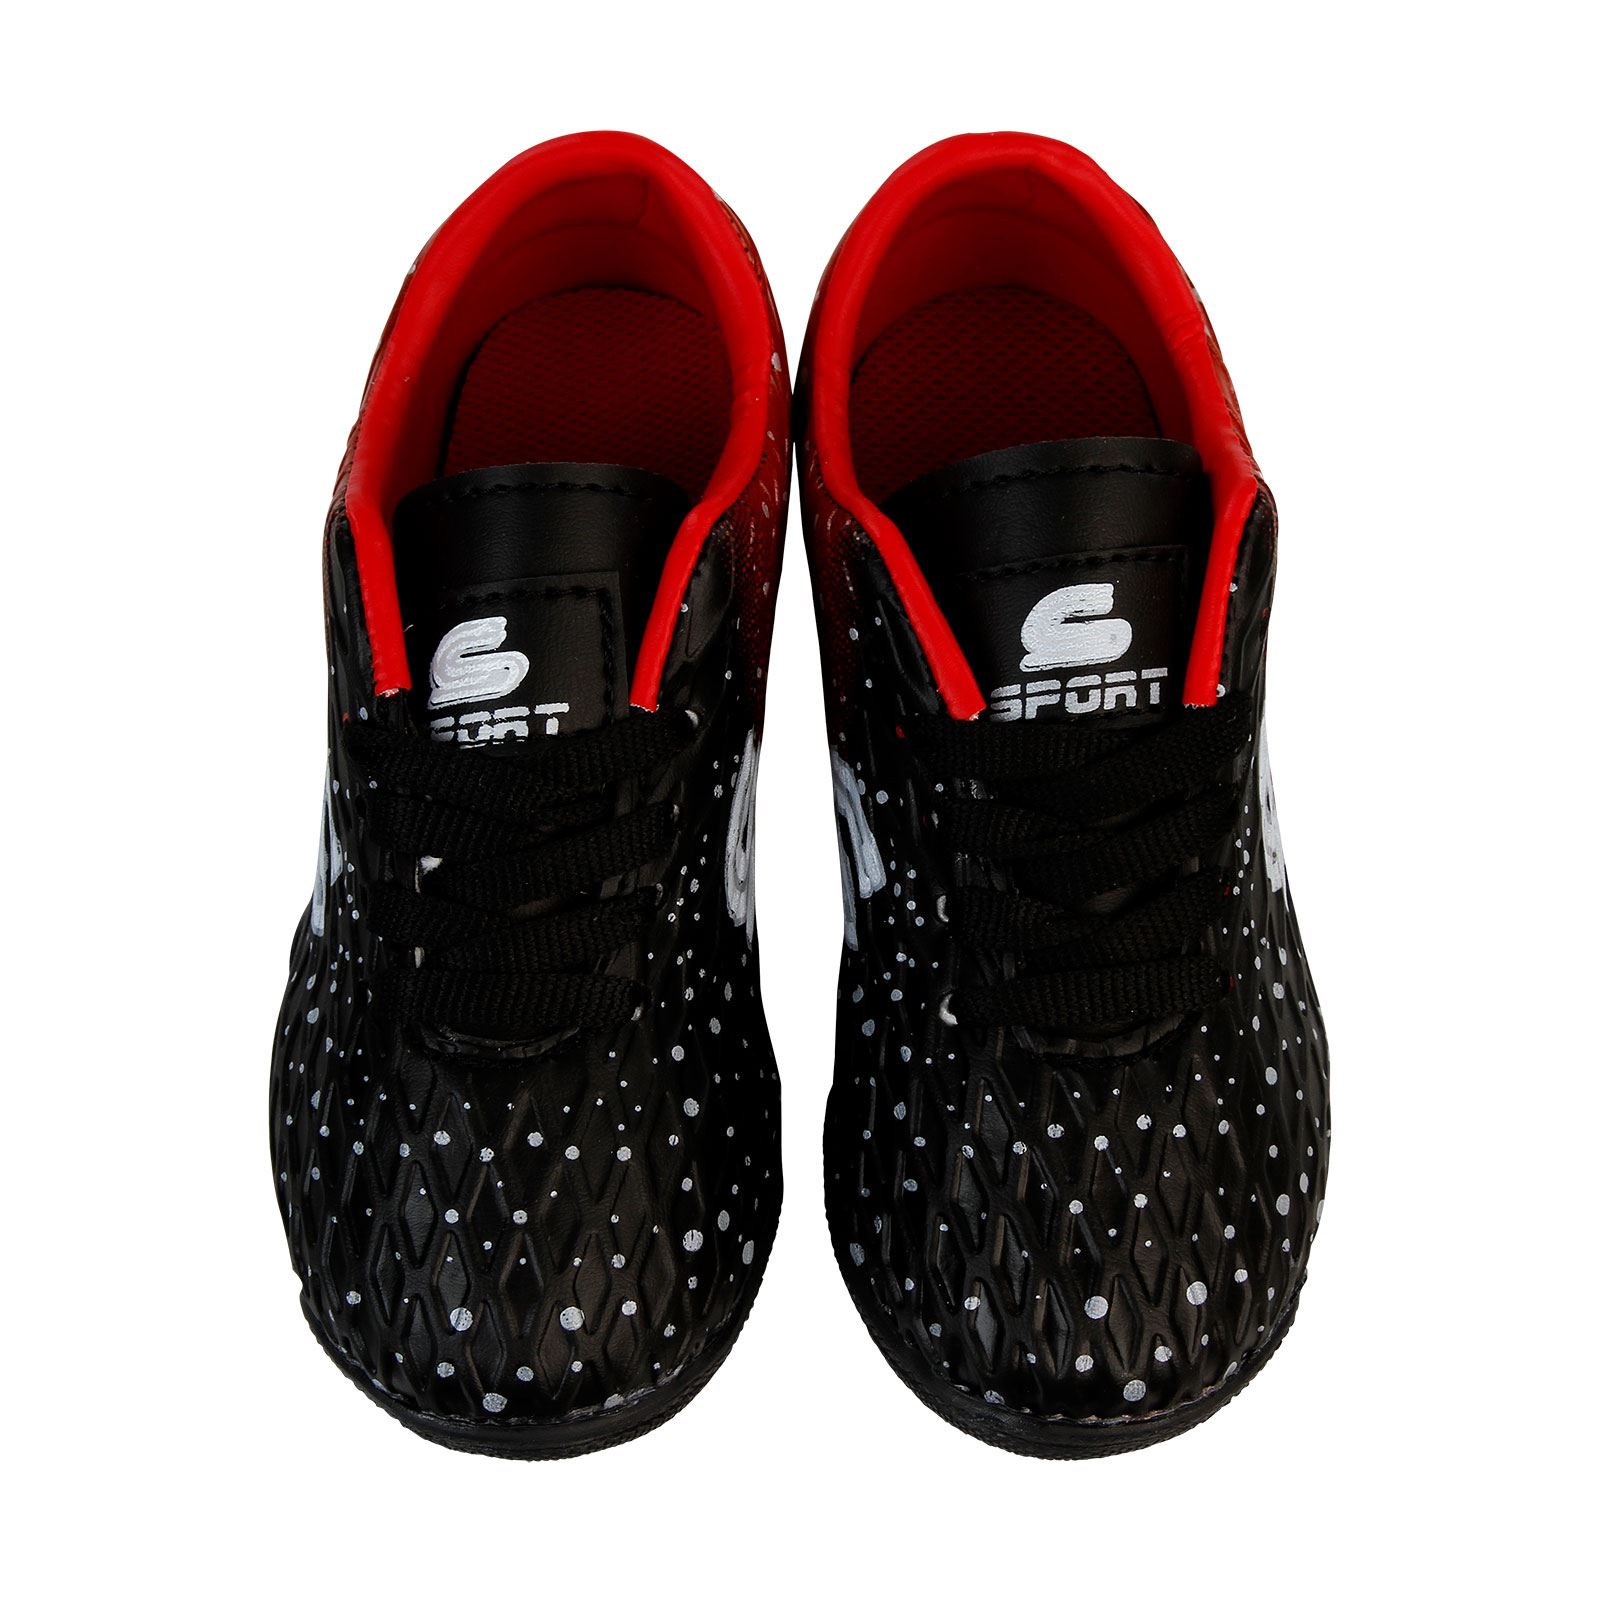 Sport Erkek Çocuk Halı Saha Spor Ayakkabı 26-30 Numara Siyah-Kırmızı Siyah-Kırmızı